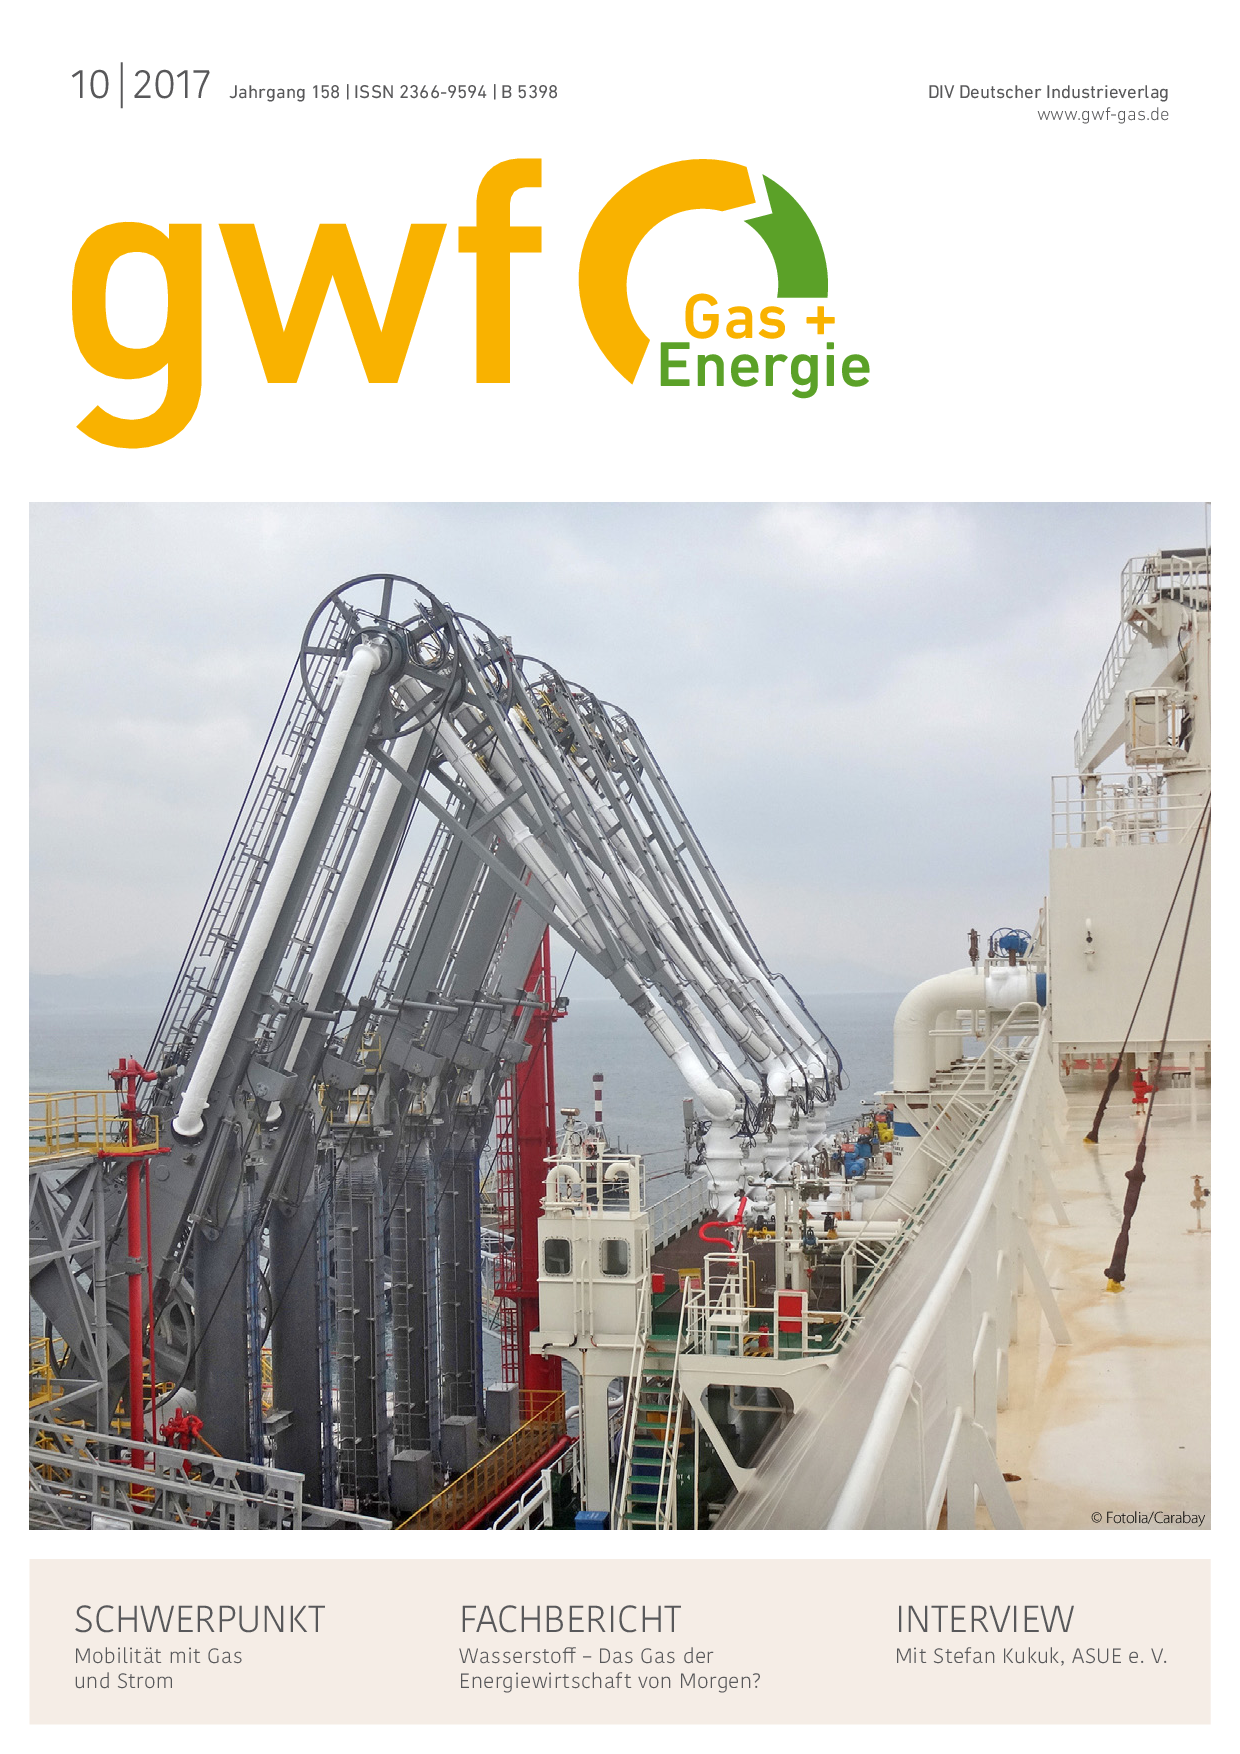 gwf Gas+Energie - 10 2017